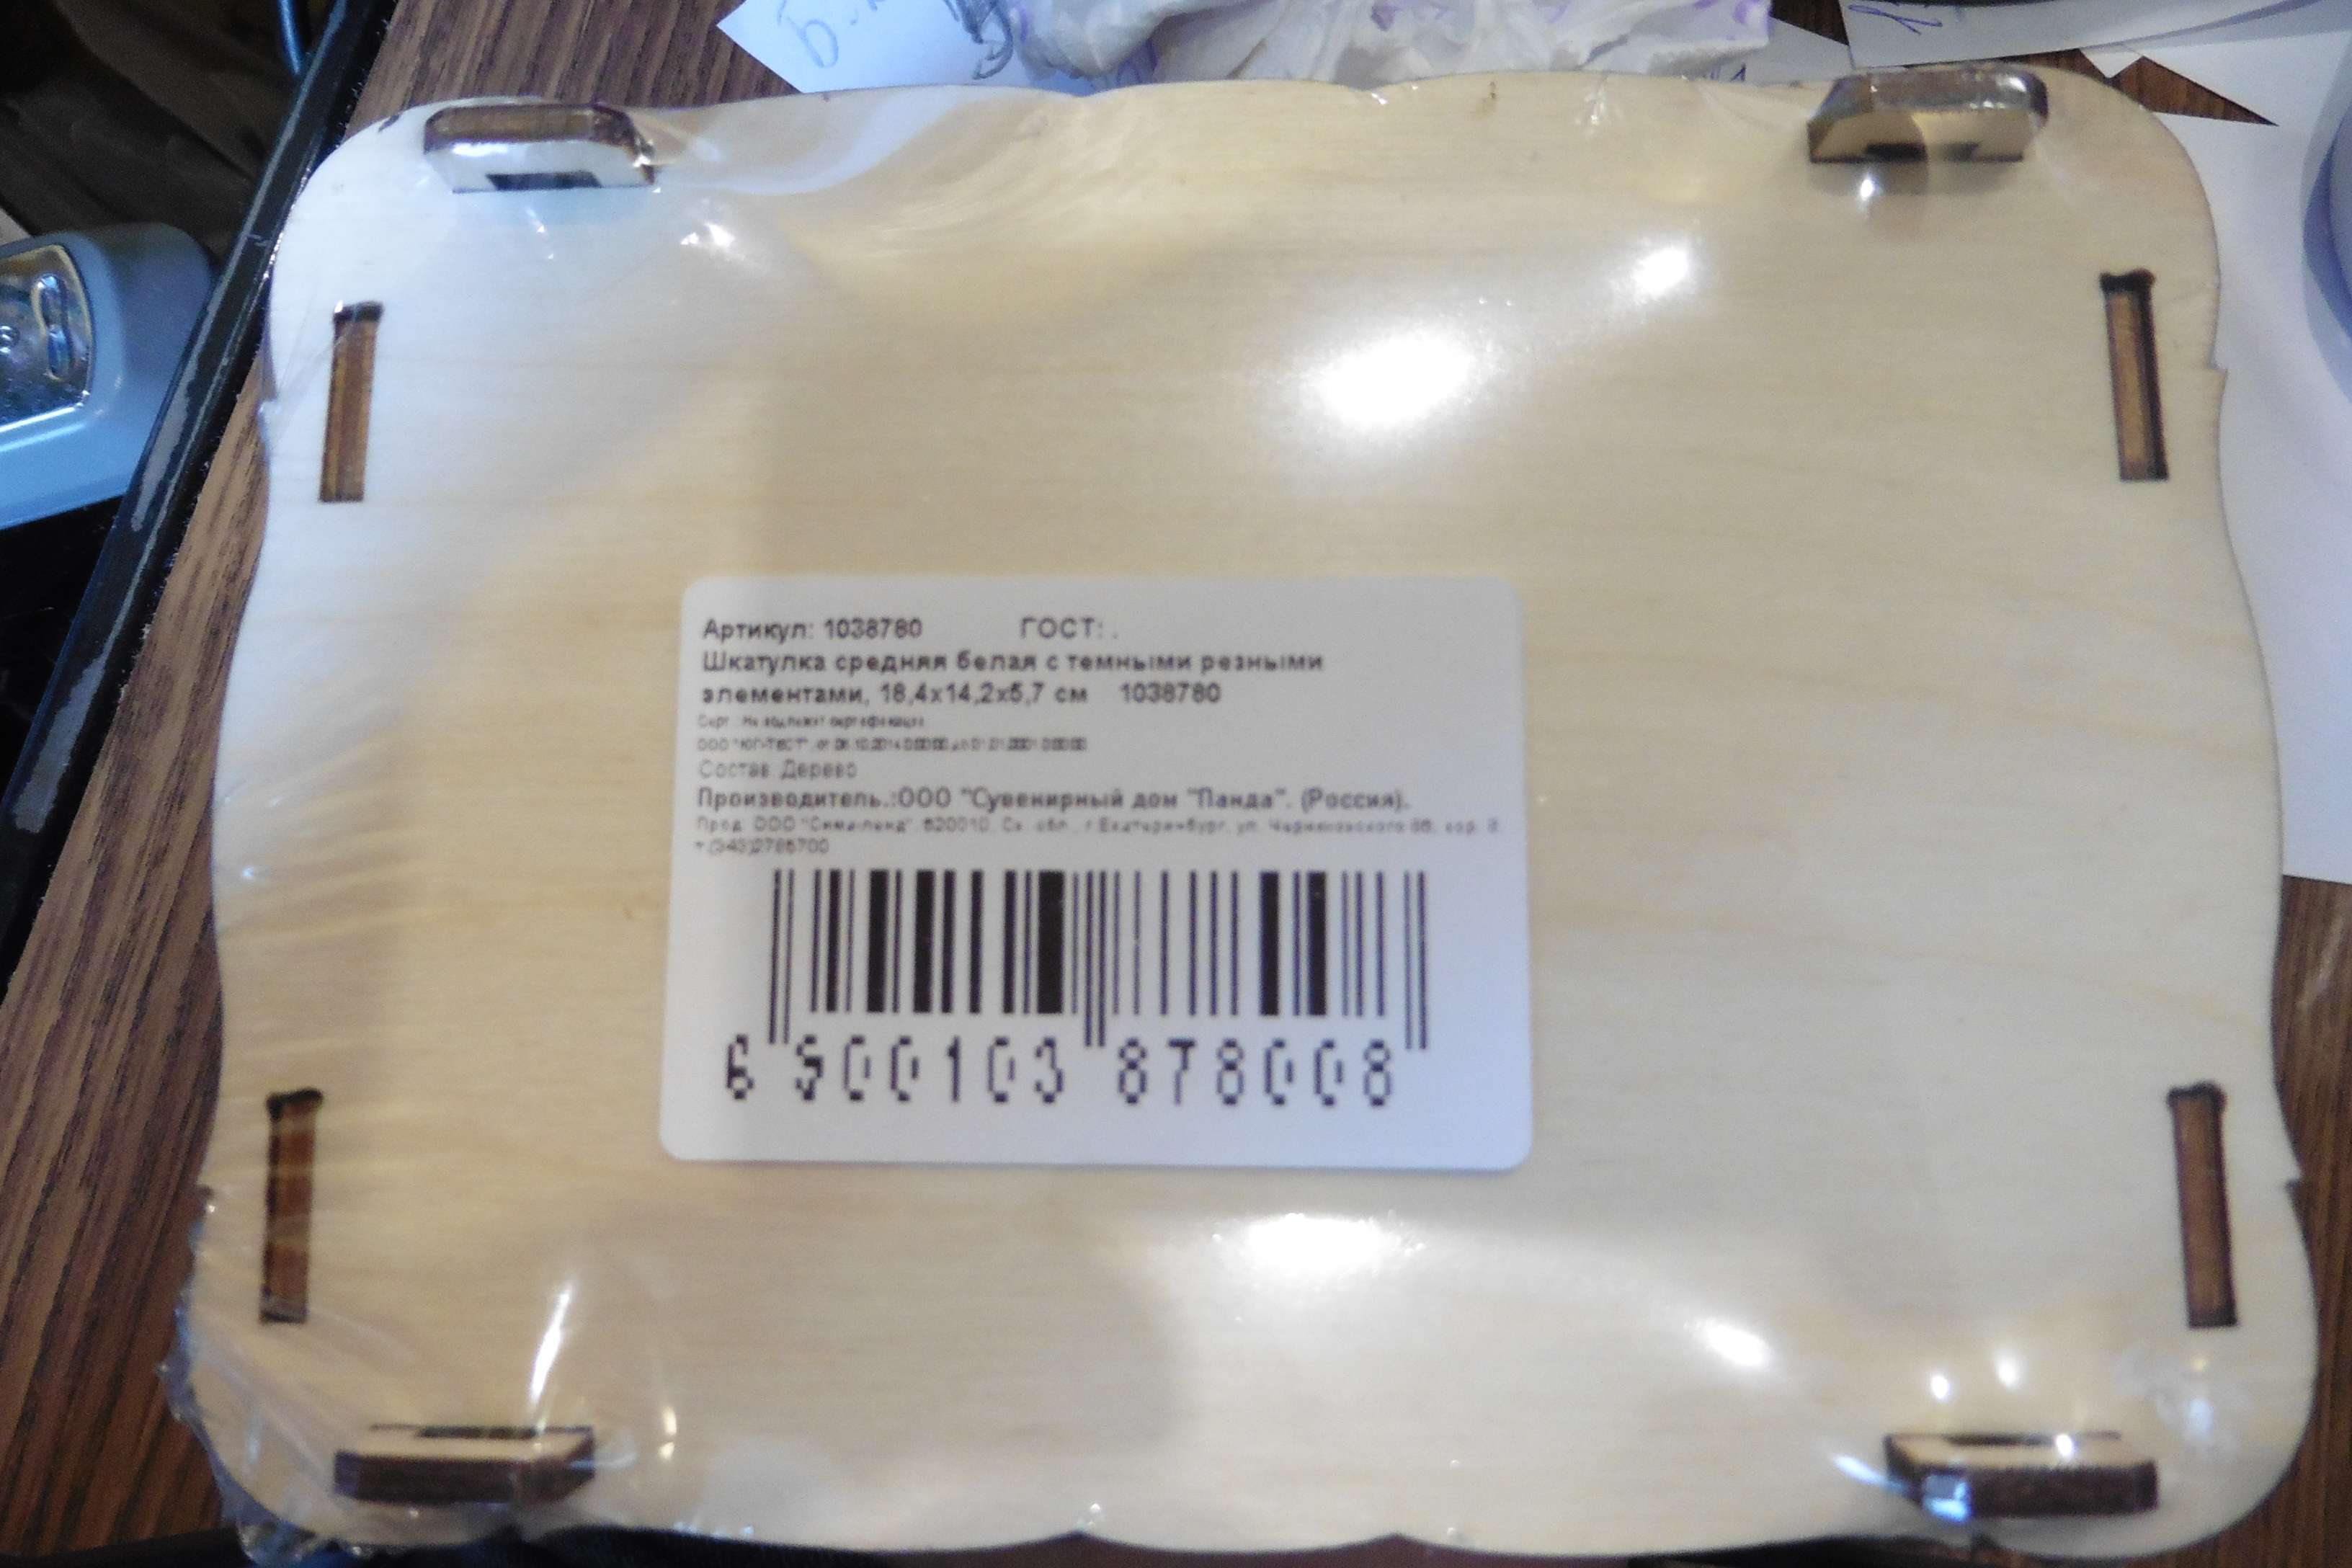 Фотография покупателя товара Шкатулка средняя белая с темными резными элементами, 18,4х14,2х5,7 см - Фото 1